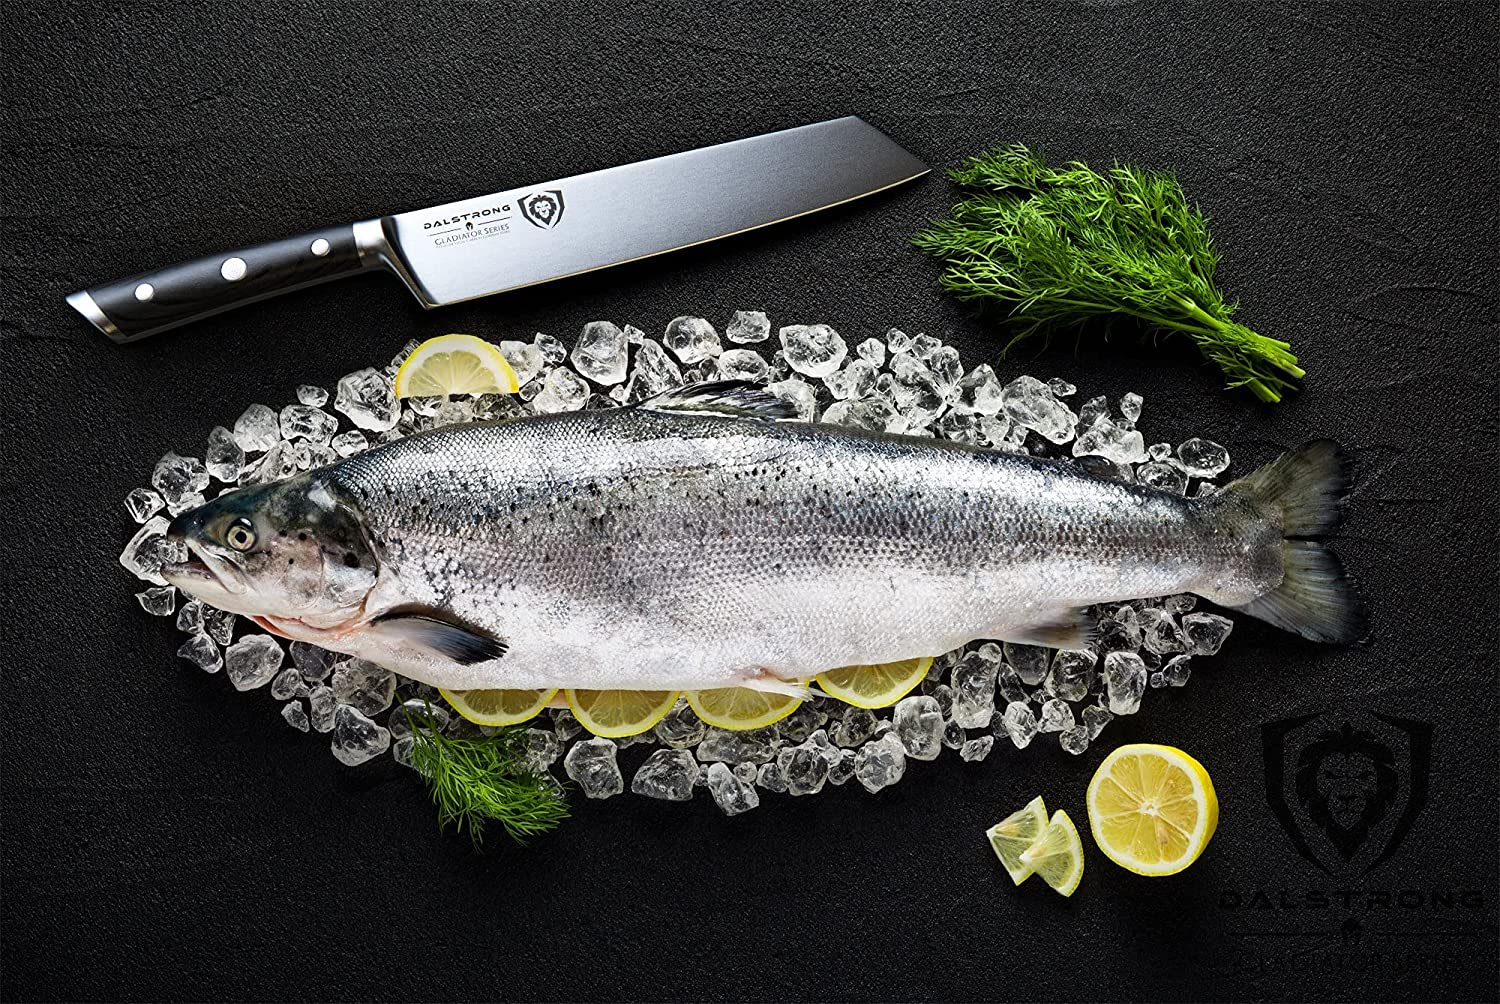 Bästa vänsterhänta kiritsukekniv- DALSTRONG Chef Knife som skär fisk